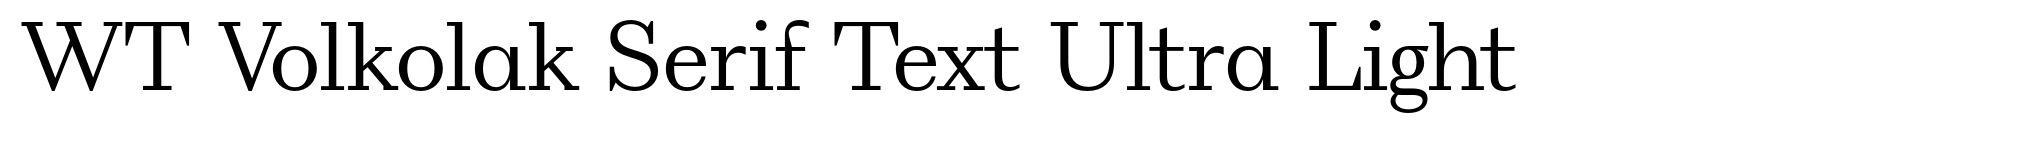 WT Volkolak Serif Text Ultra Light image